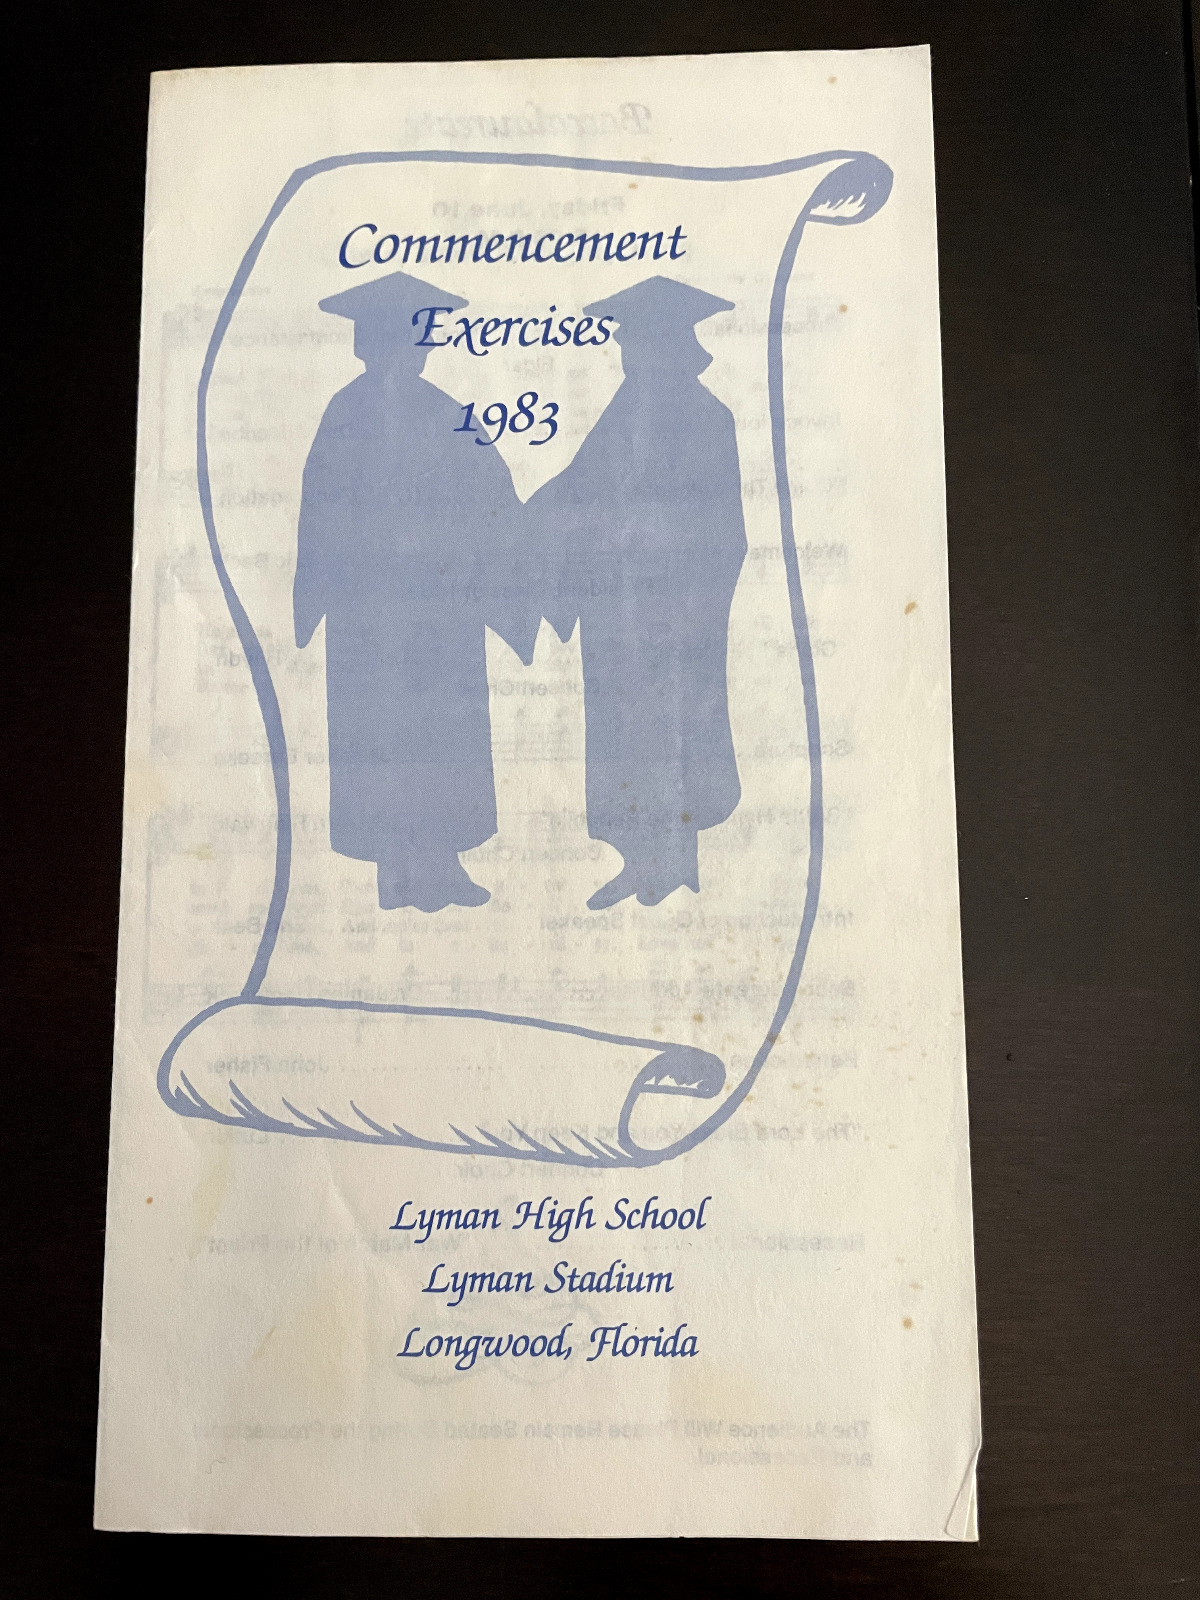 LYMAN HIGH SCHOOL 1983 GRADUATION COMMENCEMENT EXERCISES PAMPHLET